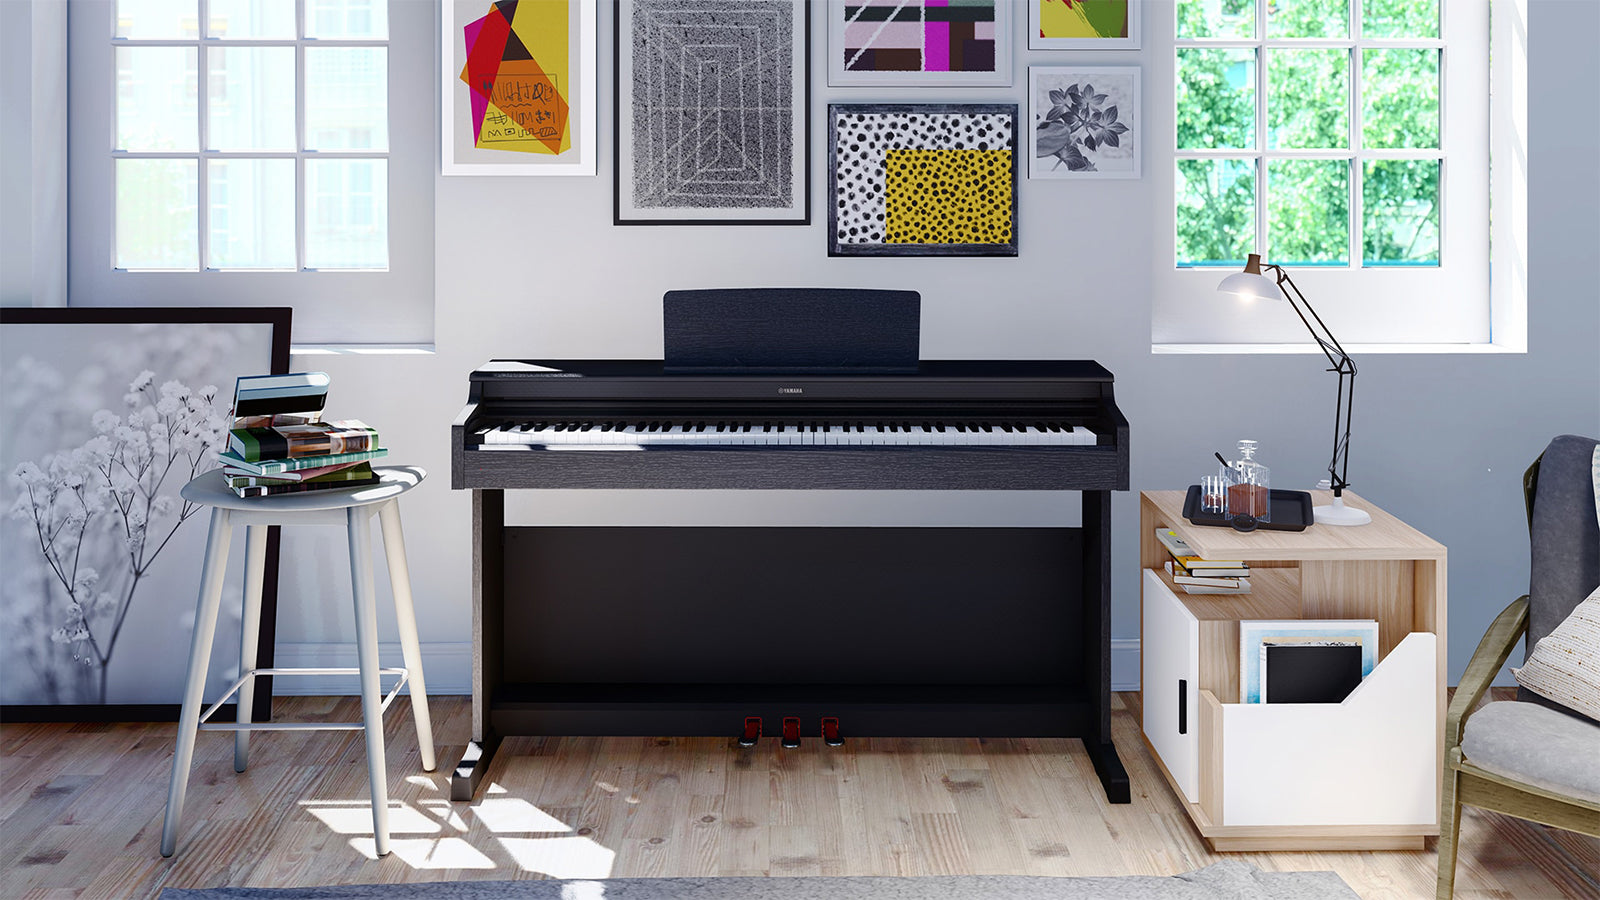 A Yamaha ARIUS piano in an art studio